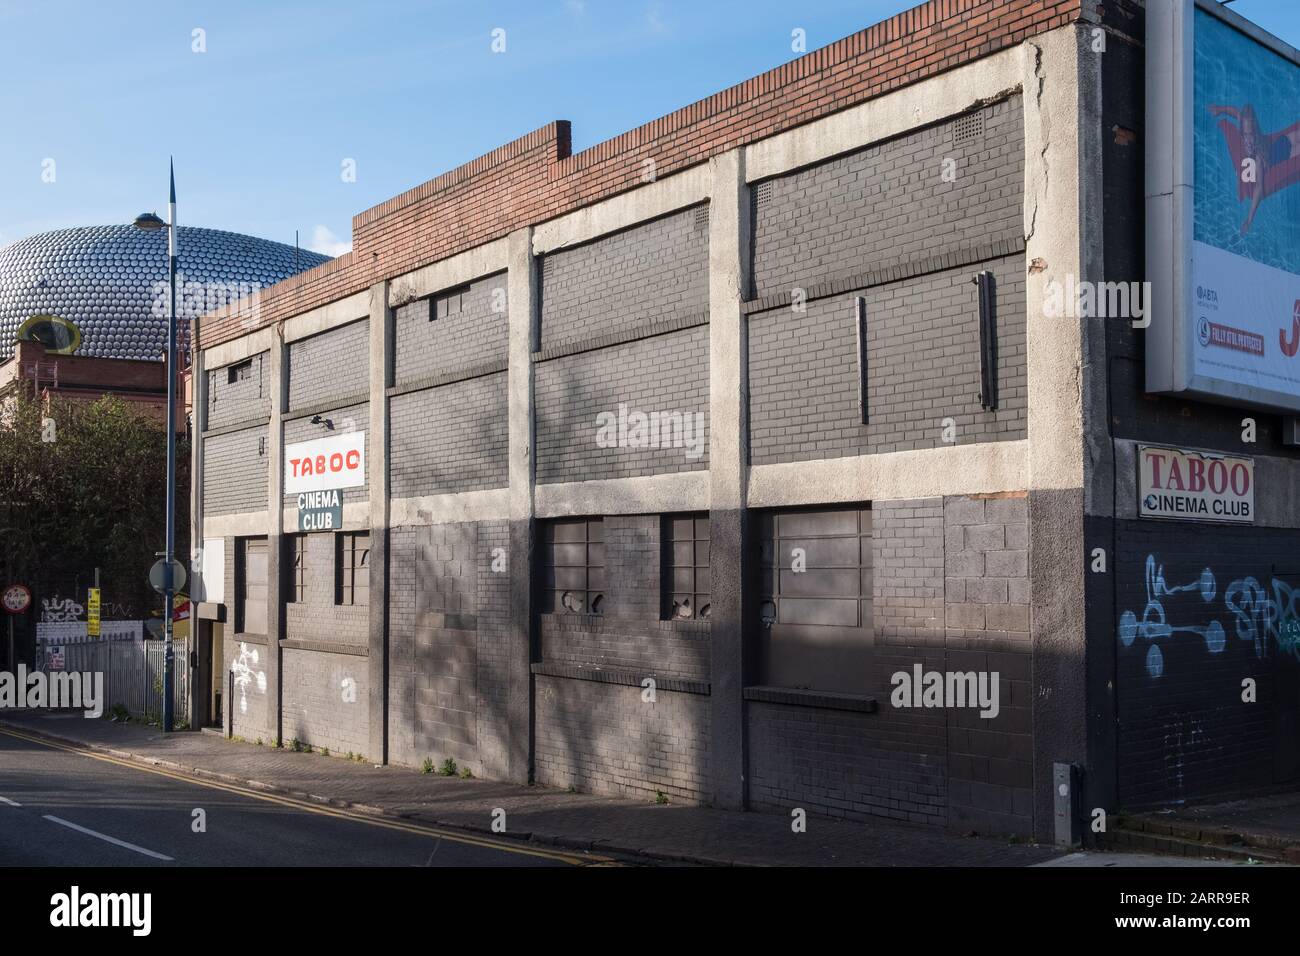 Bâtiment de cinéma pour adultes Taboo à Park Street, Digbeth, Birmingham, Royaume-Uni Banque D'Images